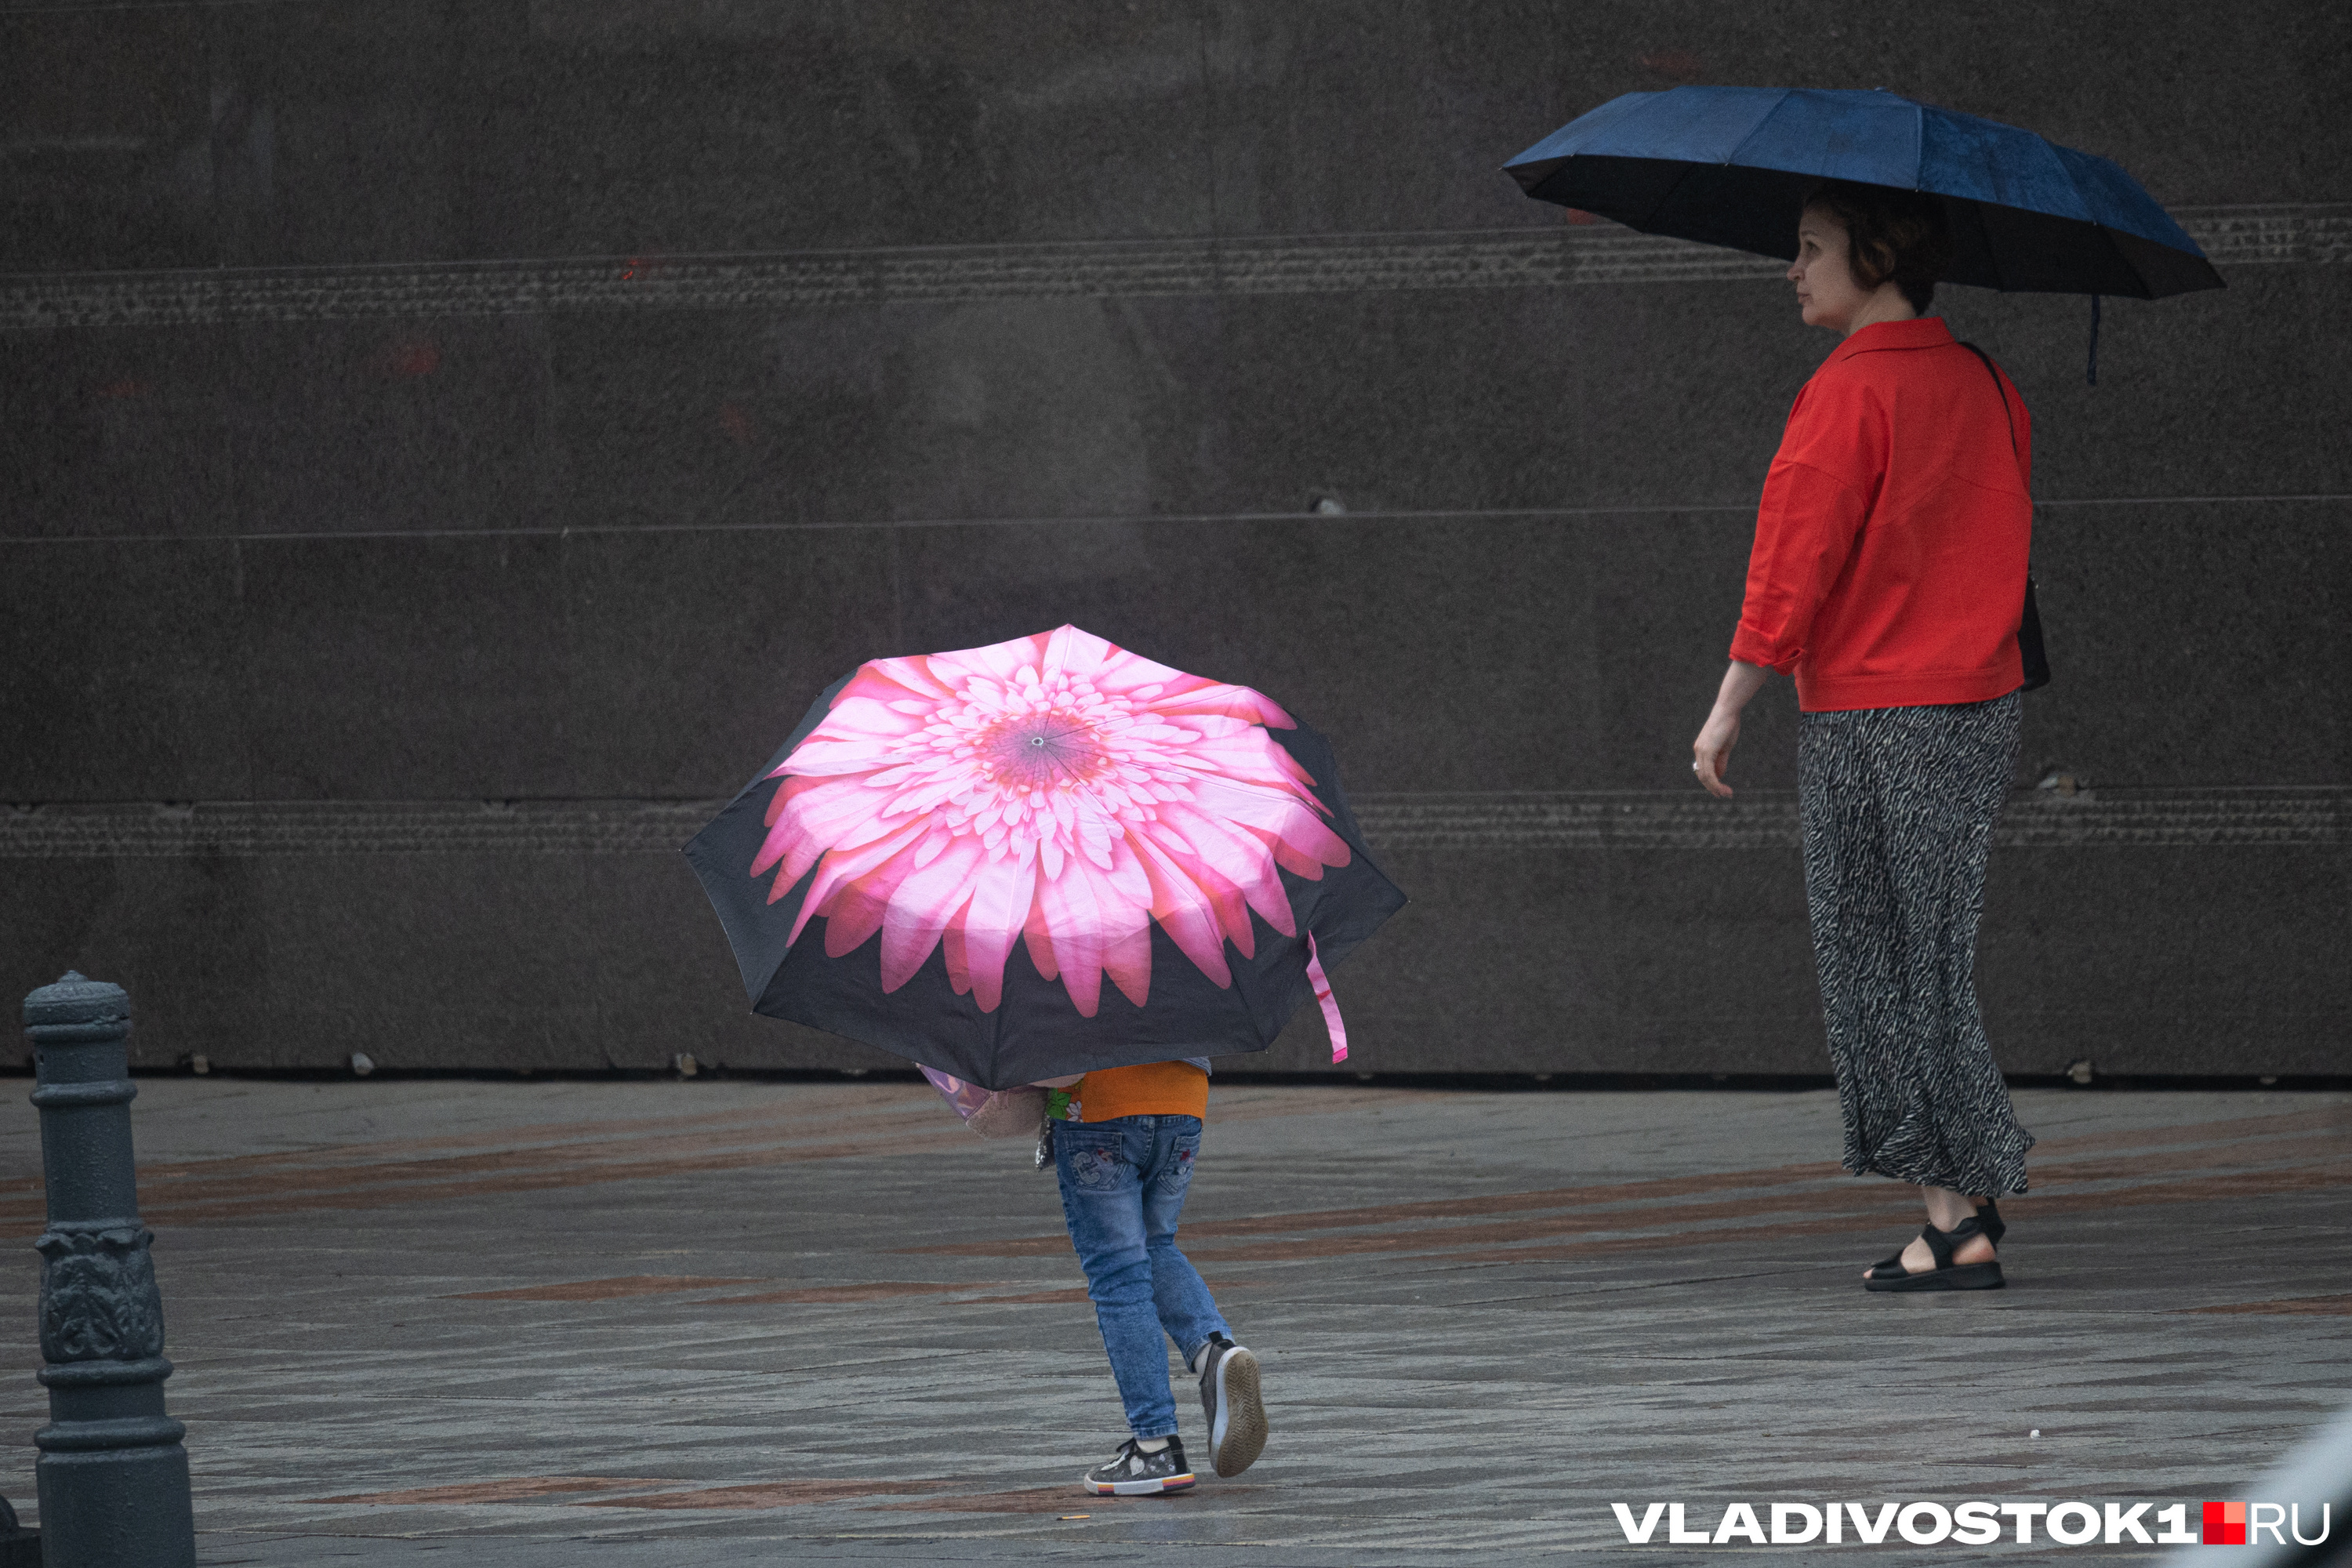 Опять жара или только дожди? Каким будет август в Барнауле — изучаем погодные сервисы